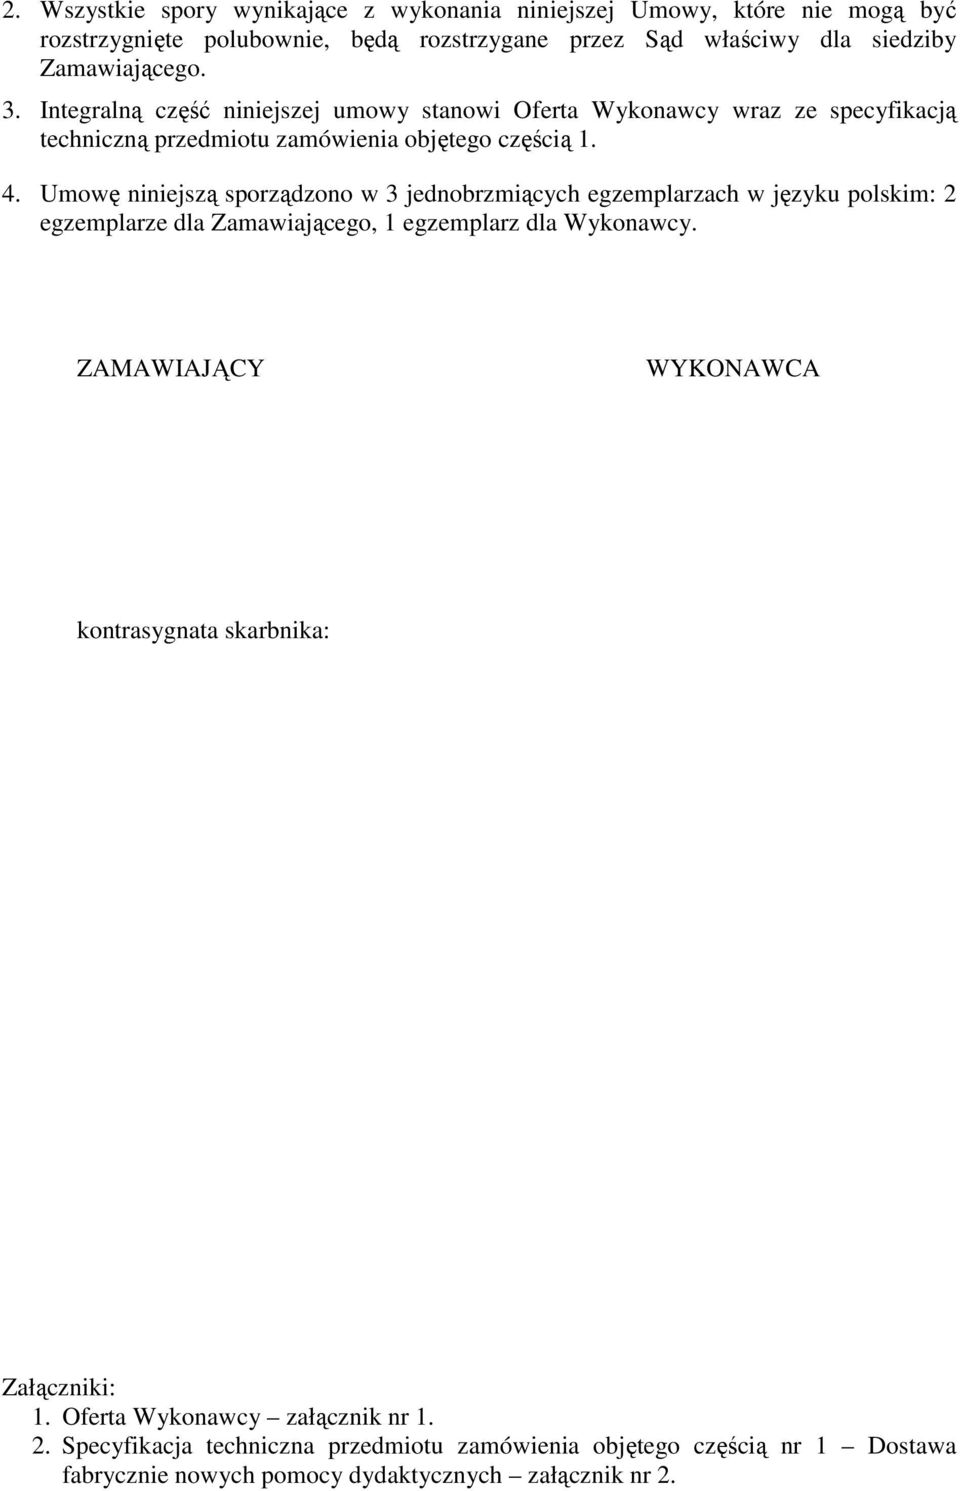 Umowę niniejszą sporządzono w 3 jednobrzmiących egzemplarzach w języku polskim: 2 egzemplarze dla Zamawiającego, 1 egzemplarz dla Wykonawcy.